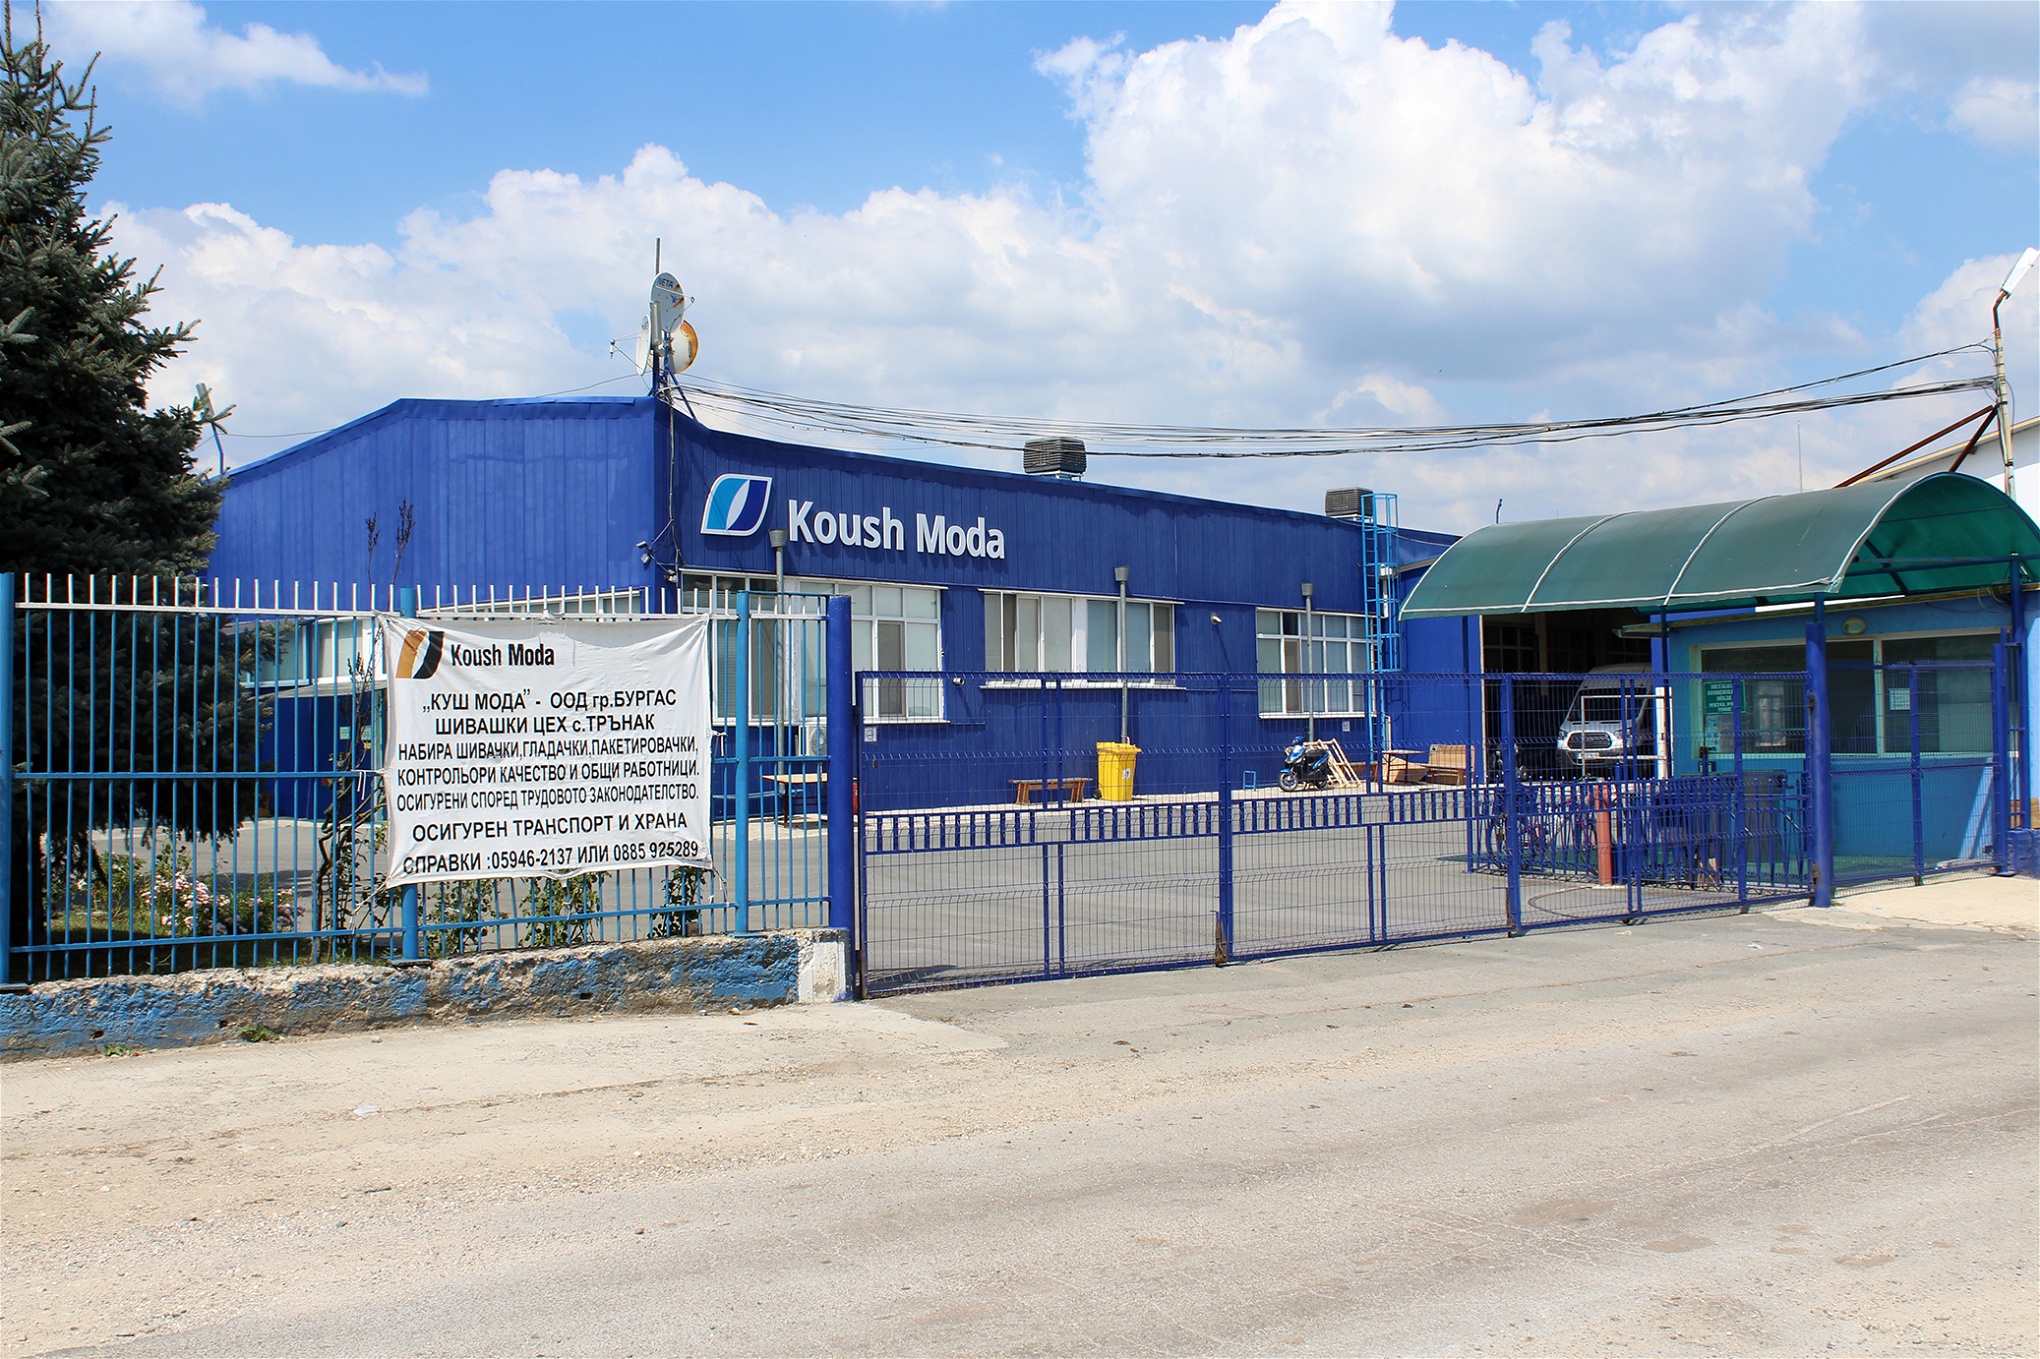 Koush Modas fabrik i Tarnak i Burgasprovinsen. ”Fackföre­ningen CITUB/KNSB har försökt organisera arbetare på Koush Moda, men ledningen har vägrat dem tillträde”, säger Bettina Musiolek, koordinator för Rena kläder-kampanjen.